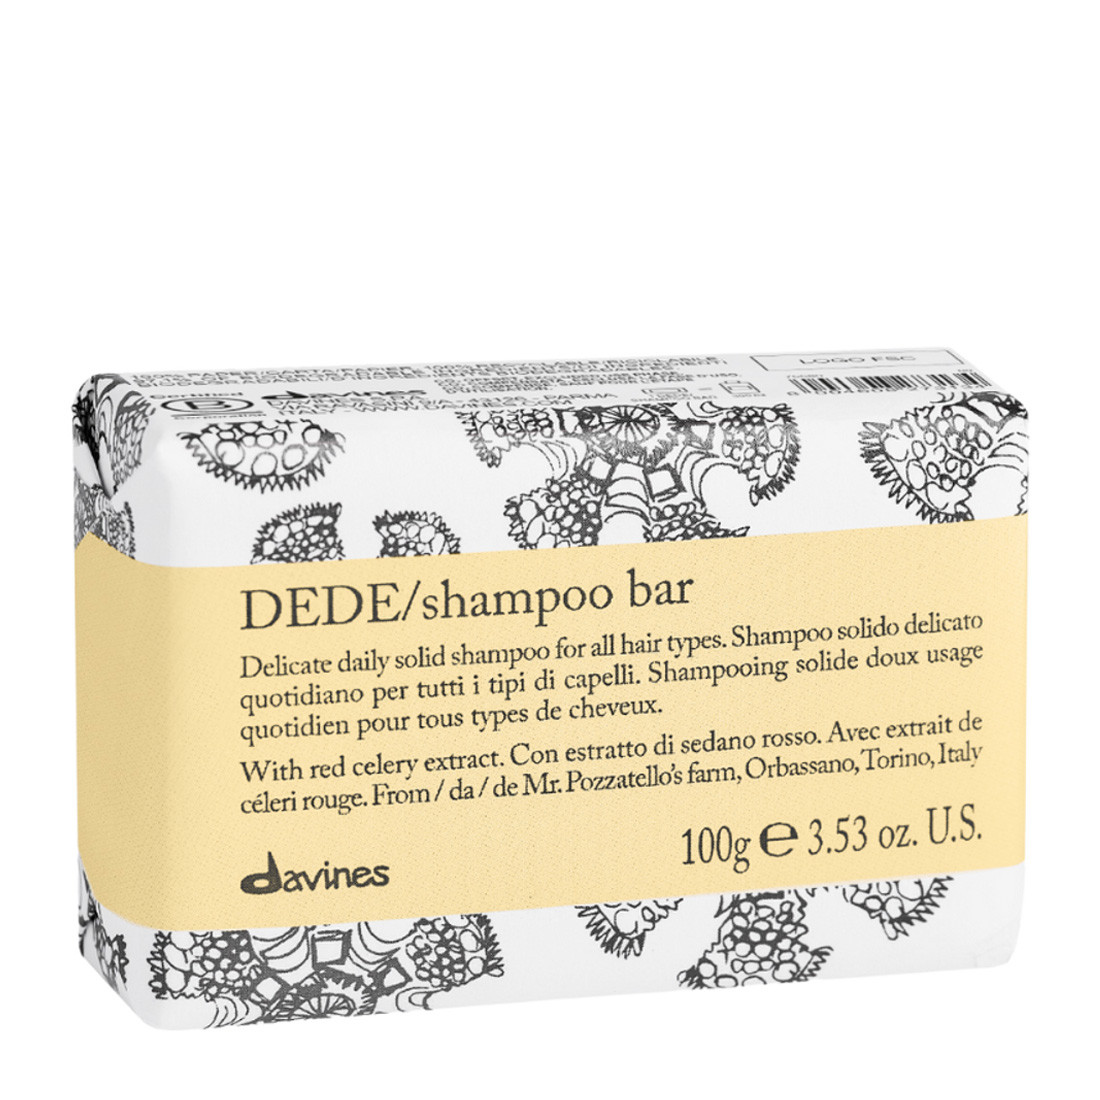 Davines Dede Shampoo Bar - Делікатний твердий шампунь для щоденного використання для всіх типів волосся